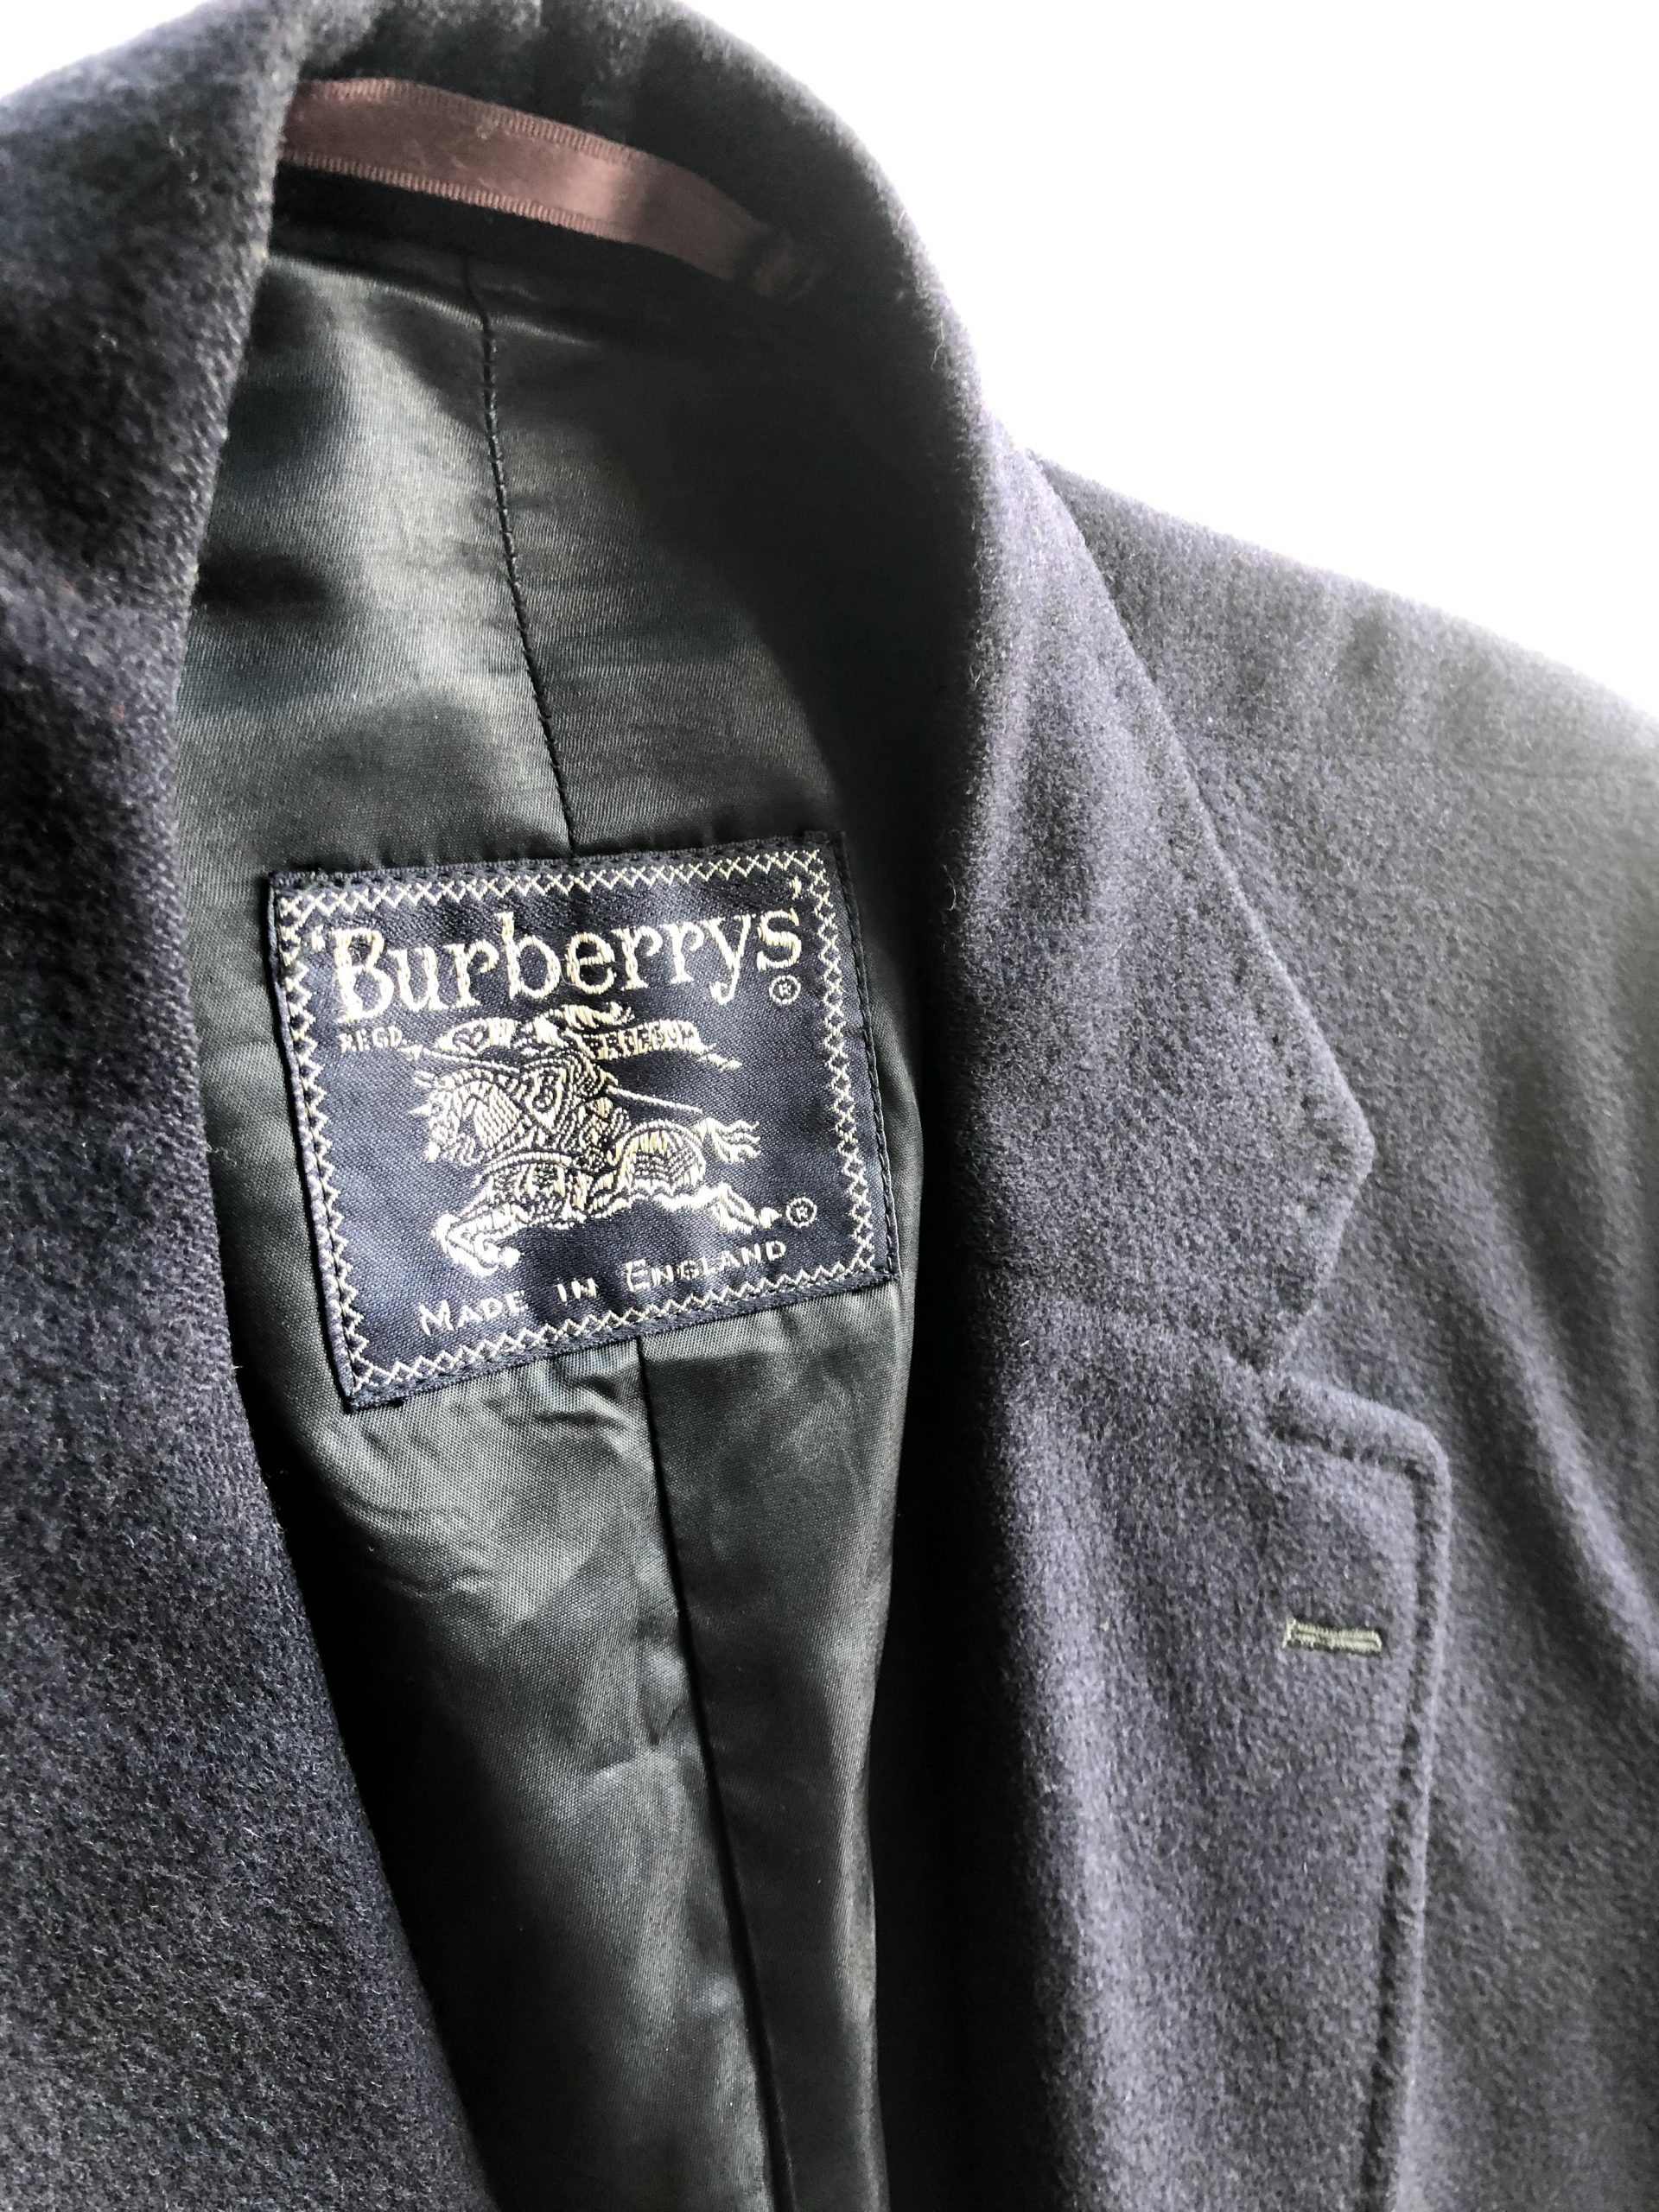 vers Een hekel hebben aan pols Burberry coat size L 100% wol - Vintageconnector